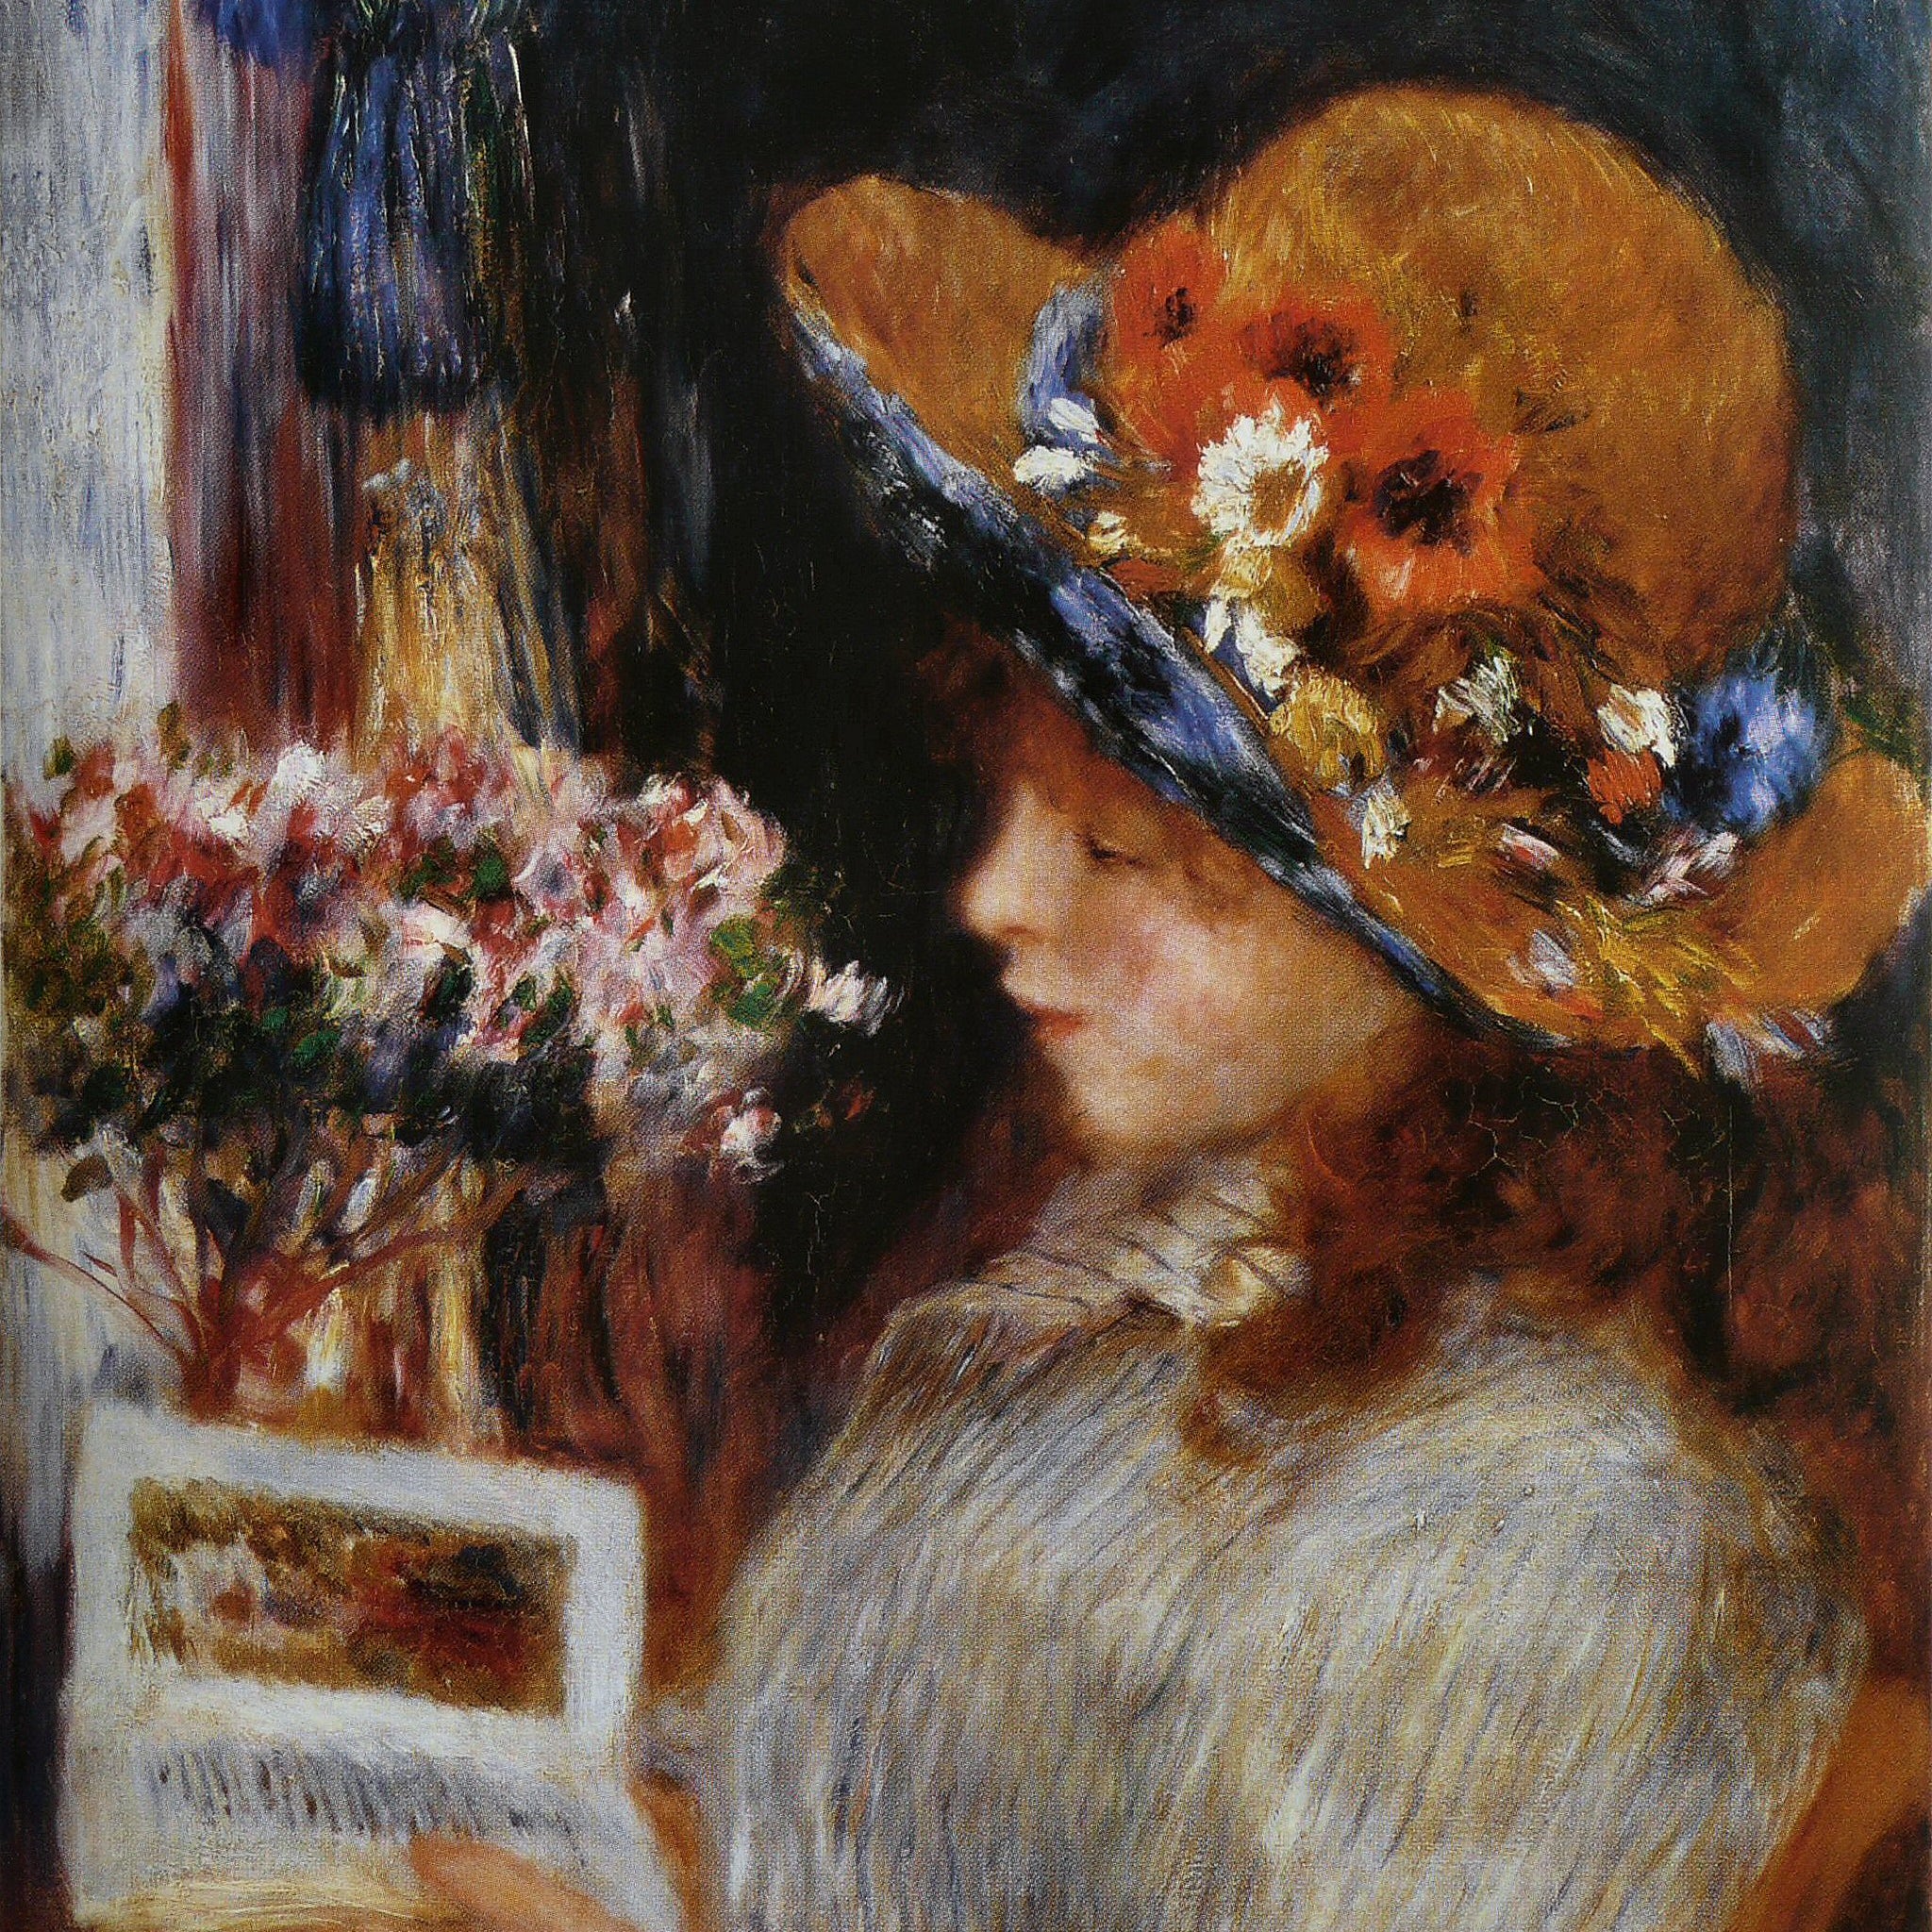 Fille lisant - Pierre-Auguste Renoir - Pierre-Auguste Renoir